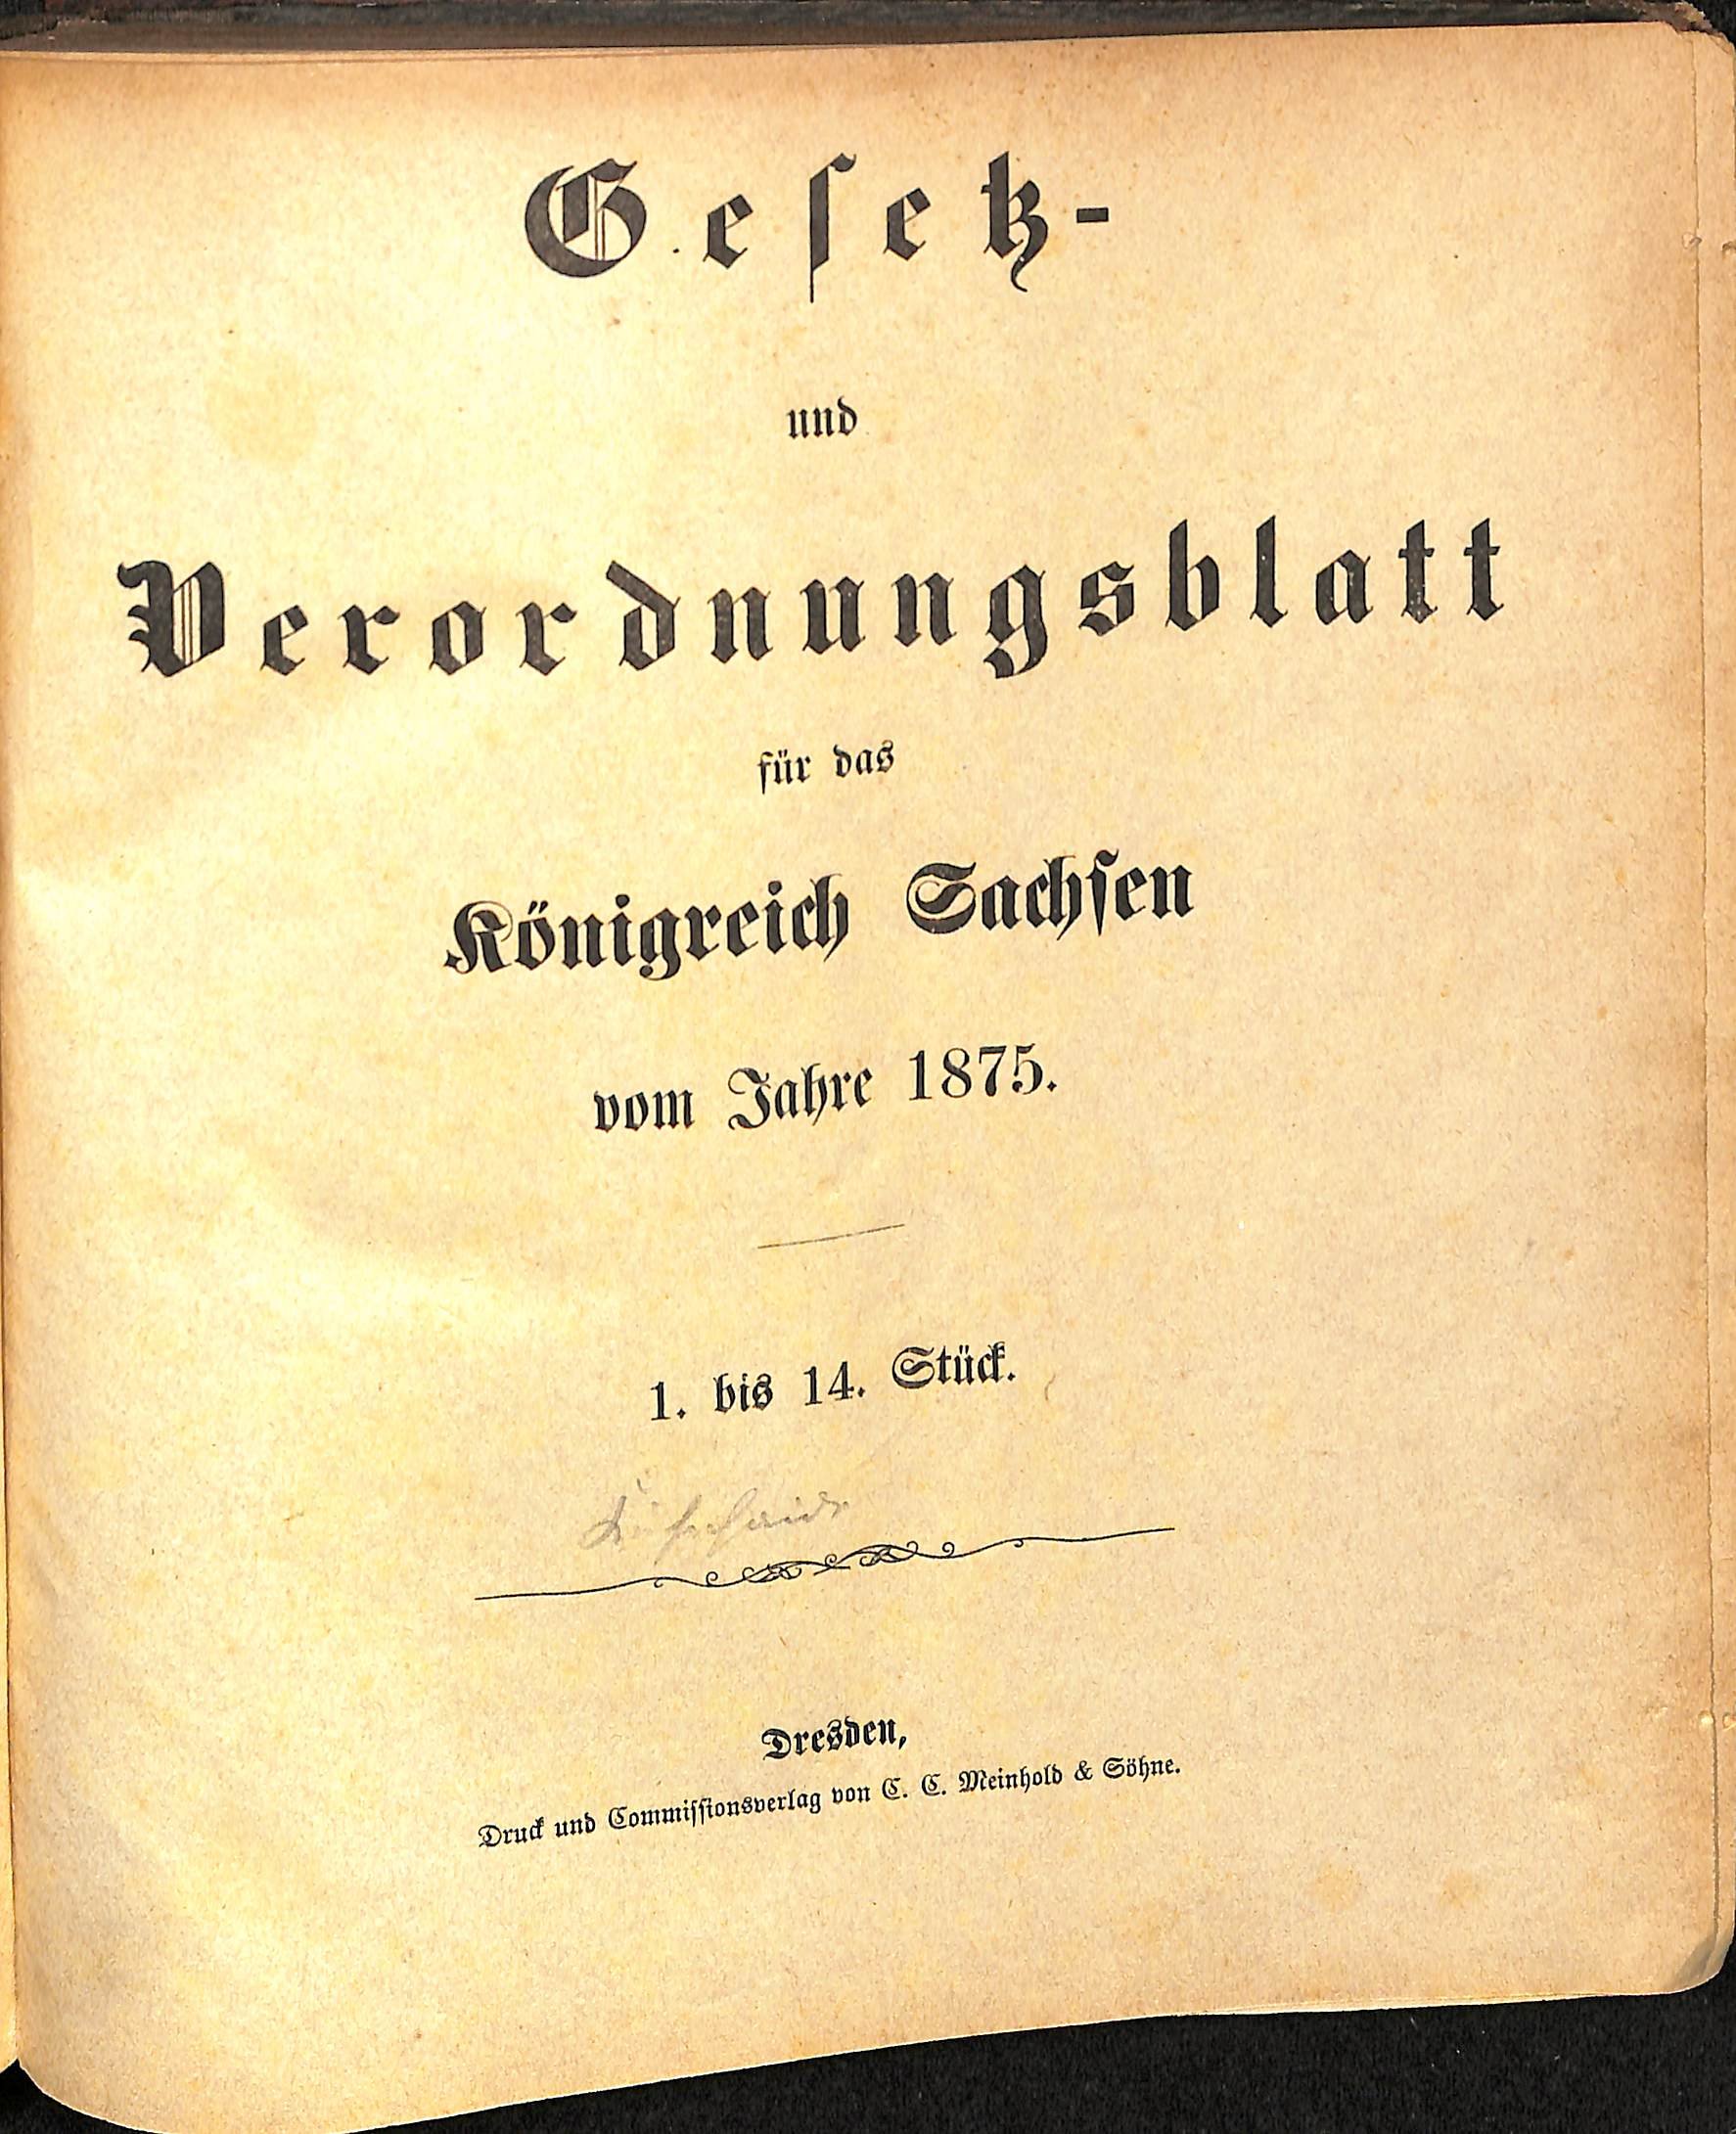 Gesetz- und Verordnungsblatt für das Königreich Sachsen vom Jahre 1875 (HEIMATWELTEN Zwönitz - Raritätensammlung Bruno Gebhardt CC BY-NC-SA)